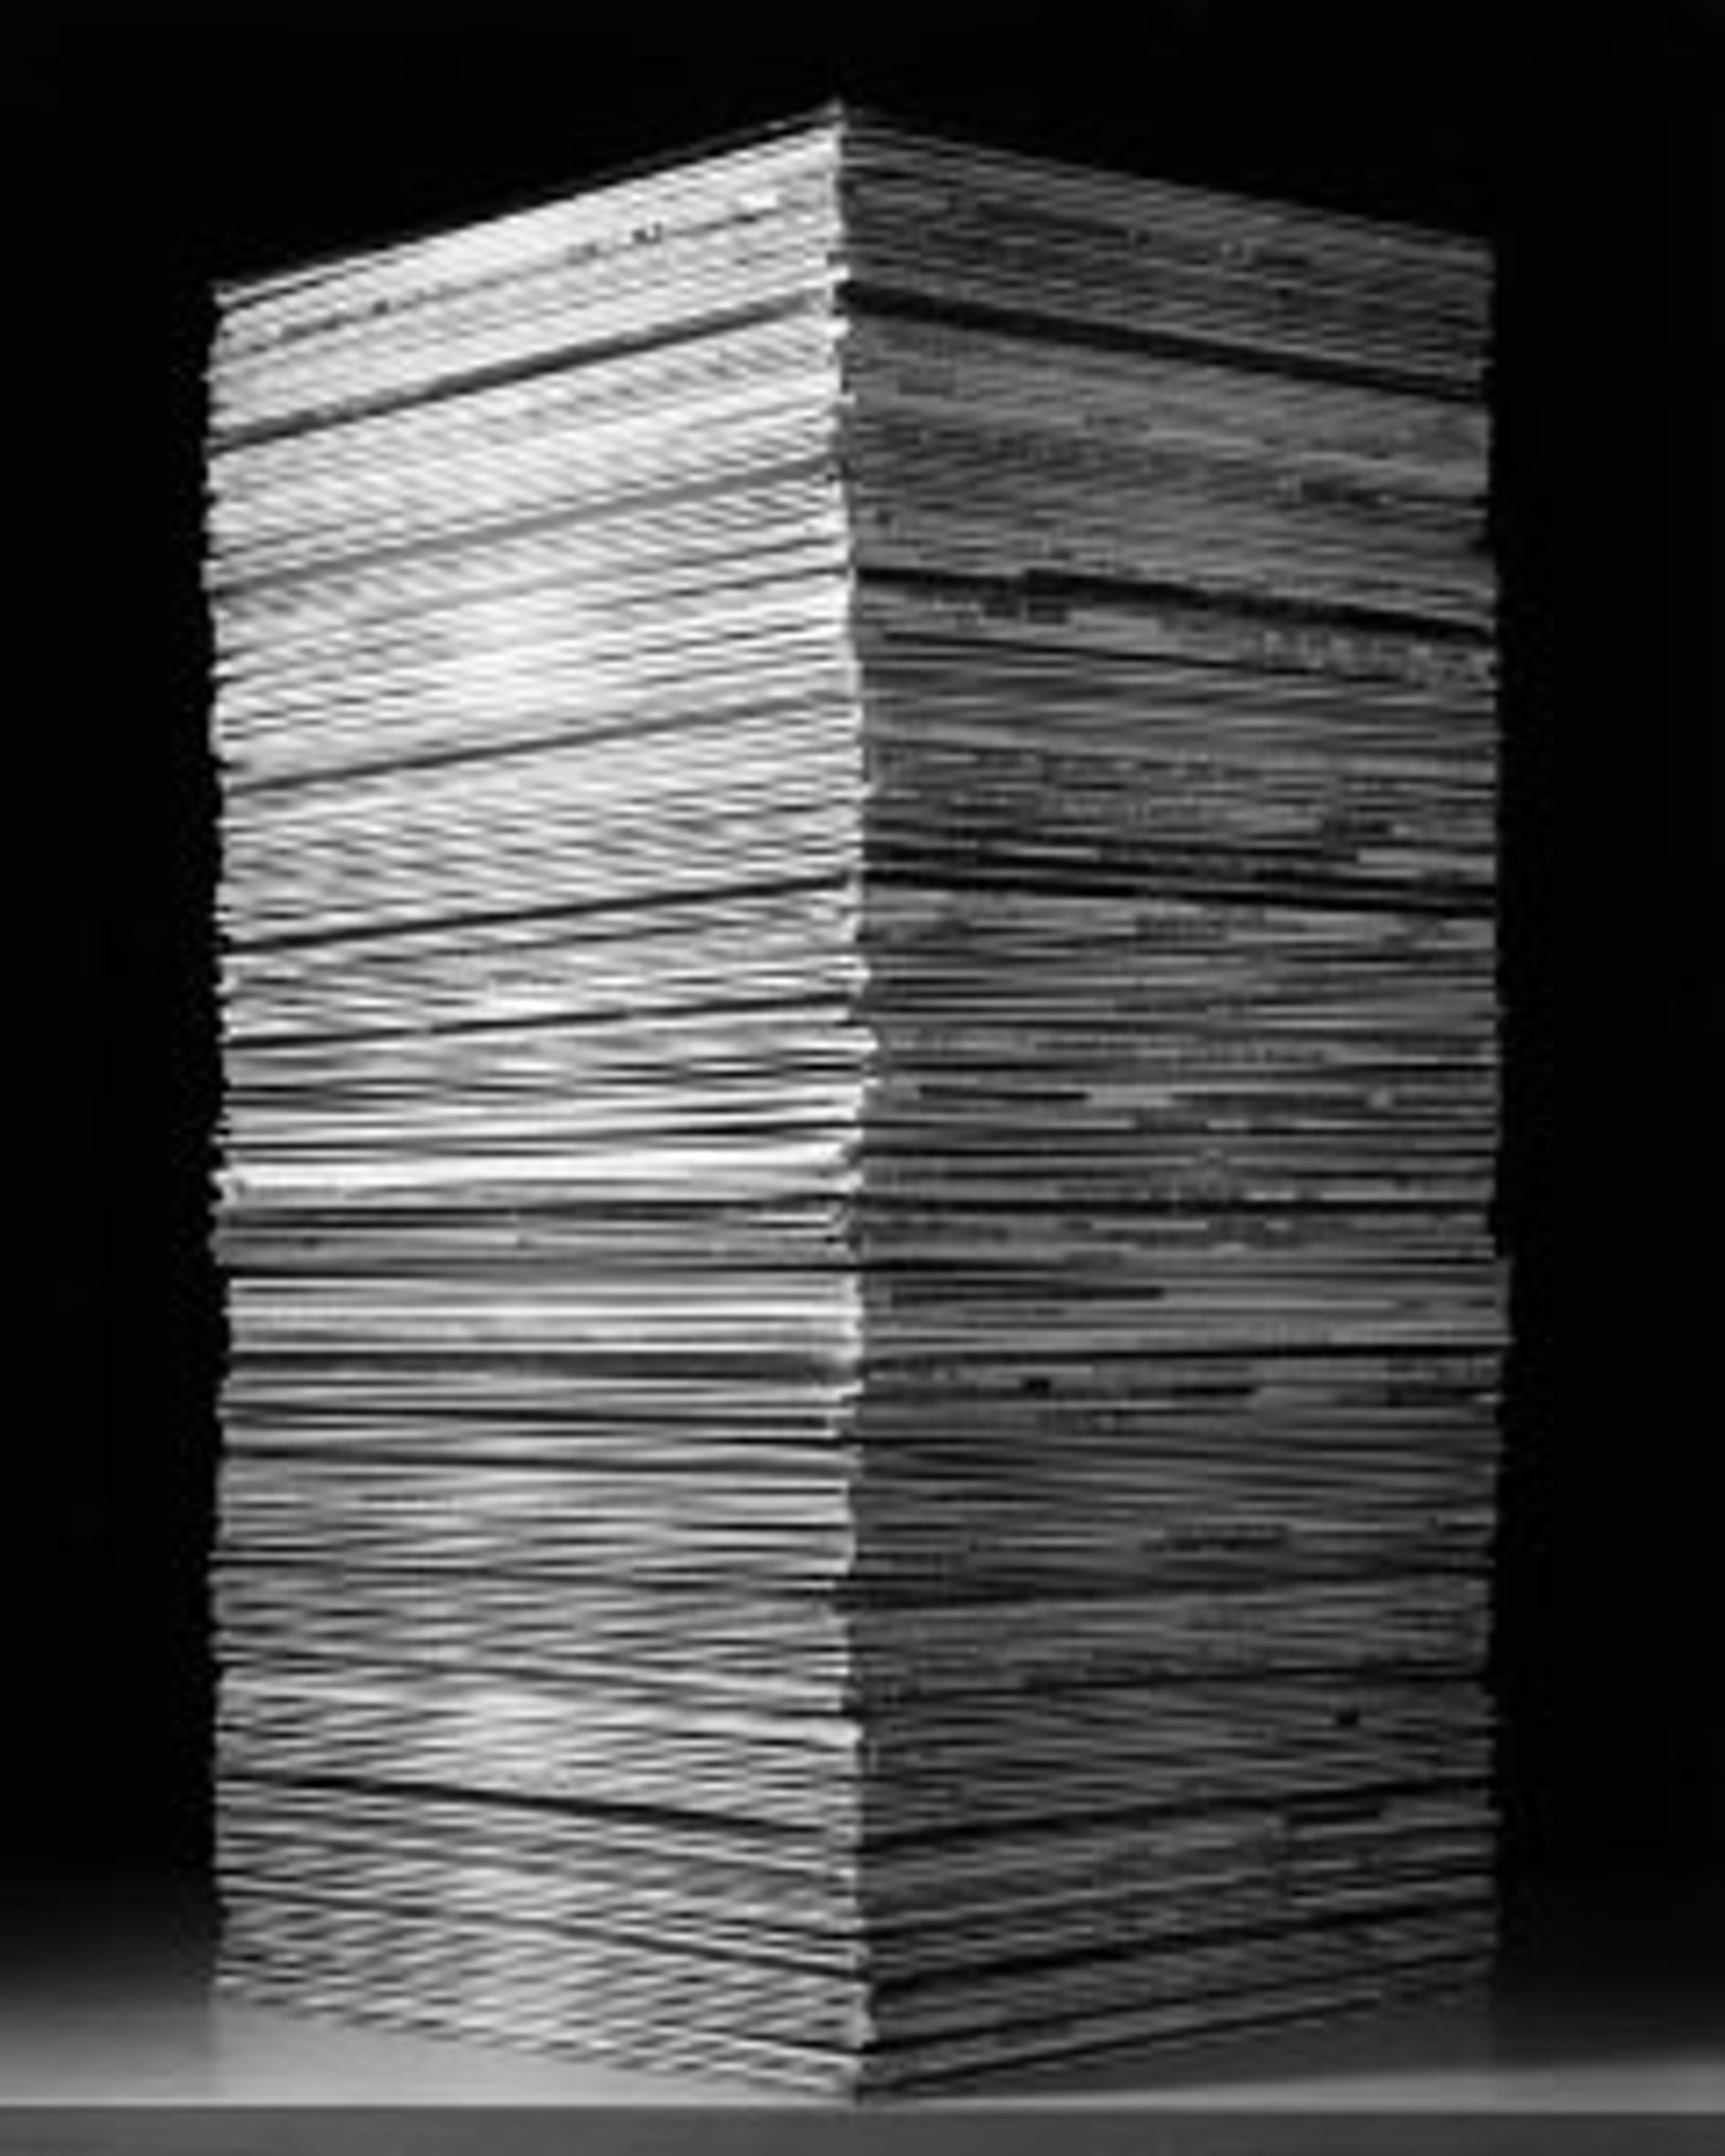 Stacked Records 3 by Glen Scheffer